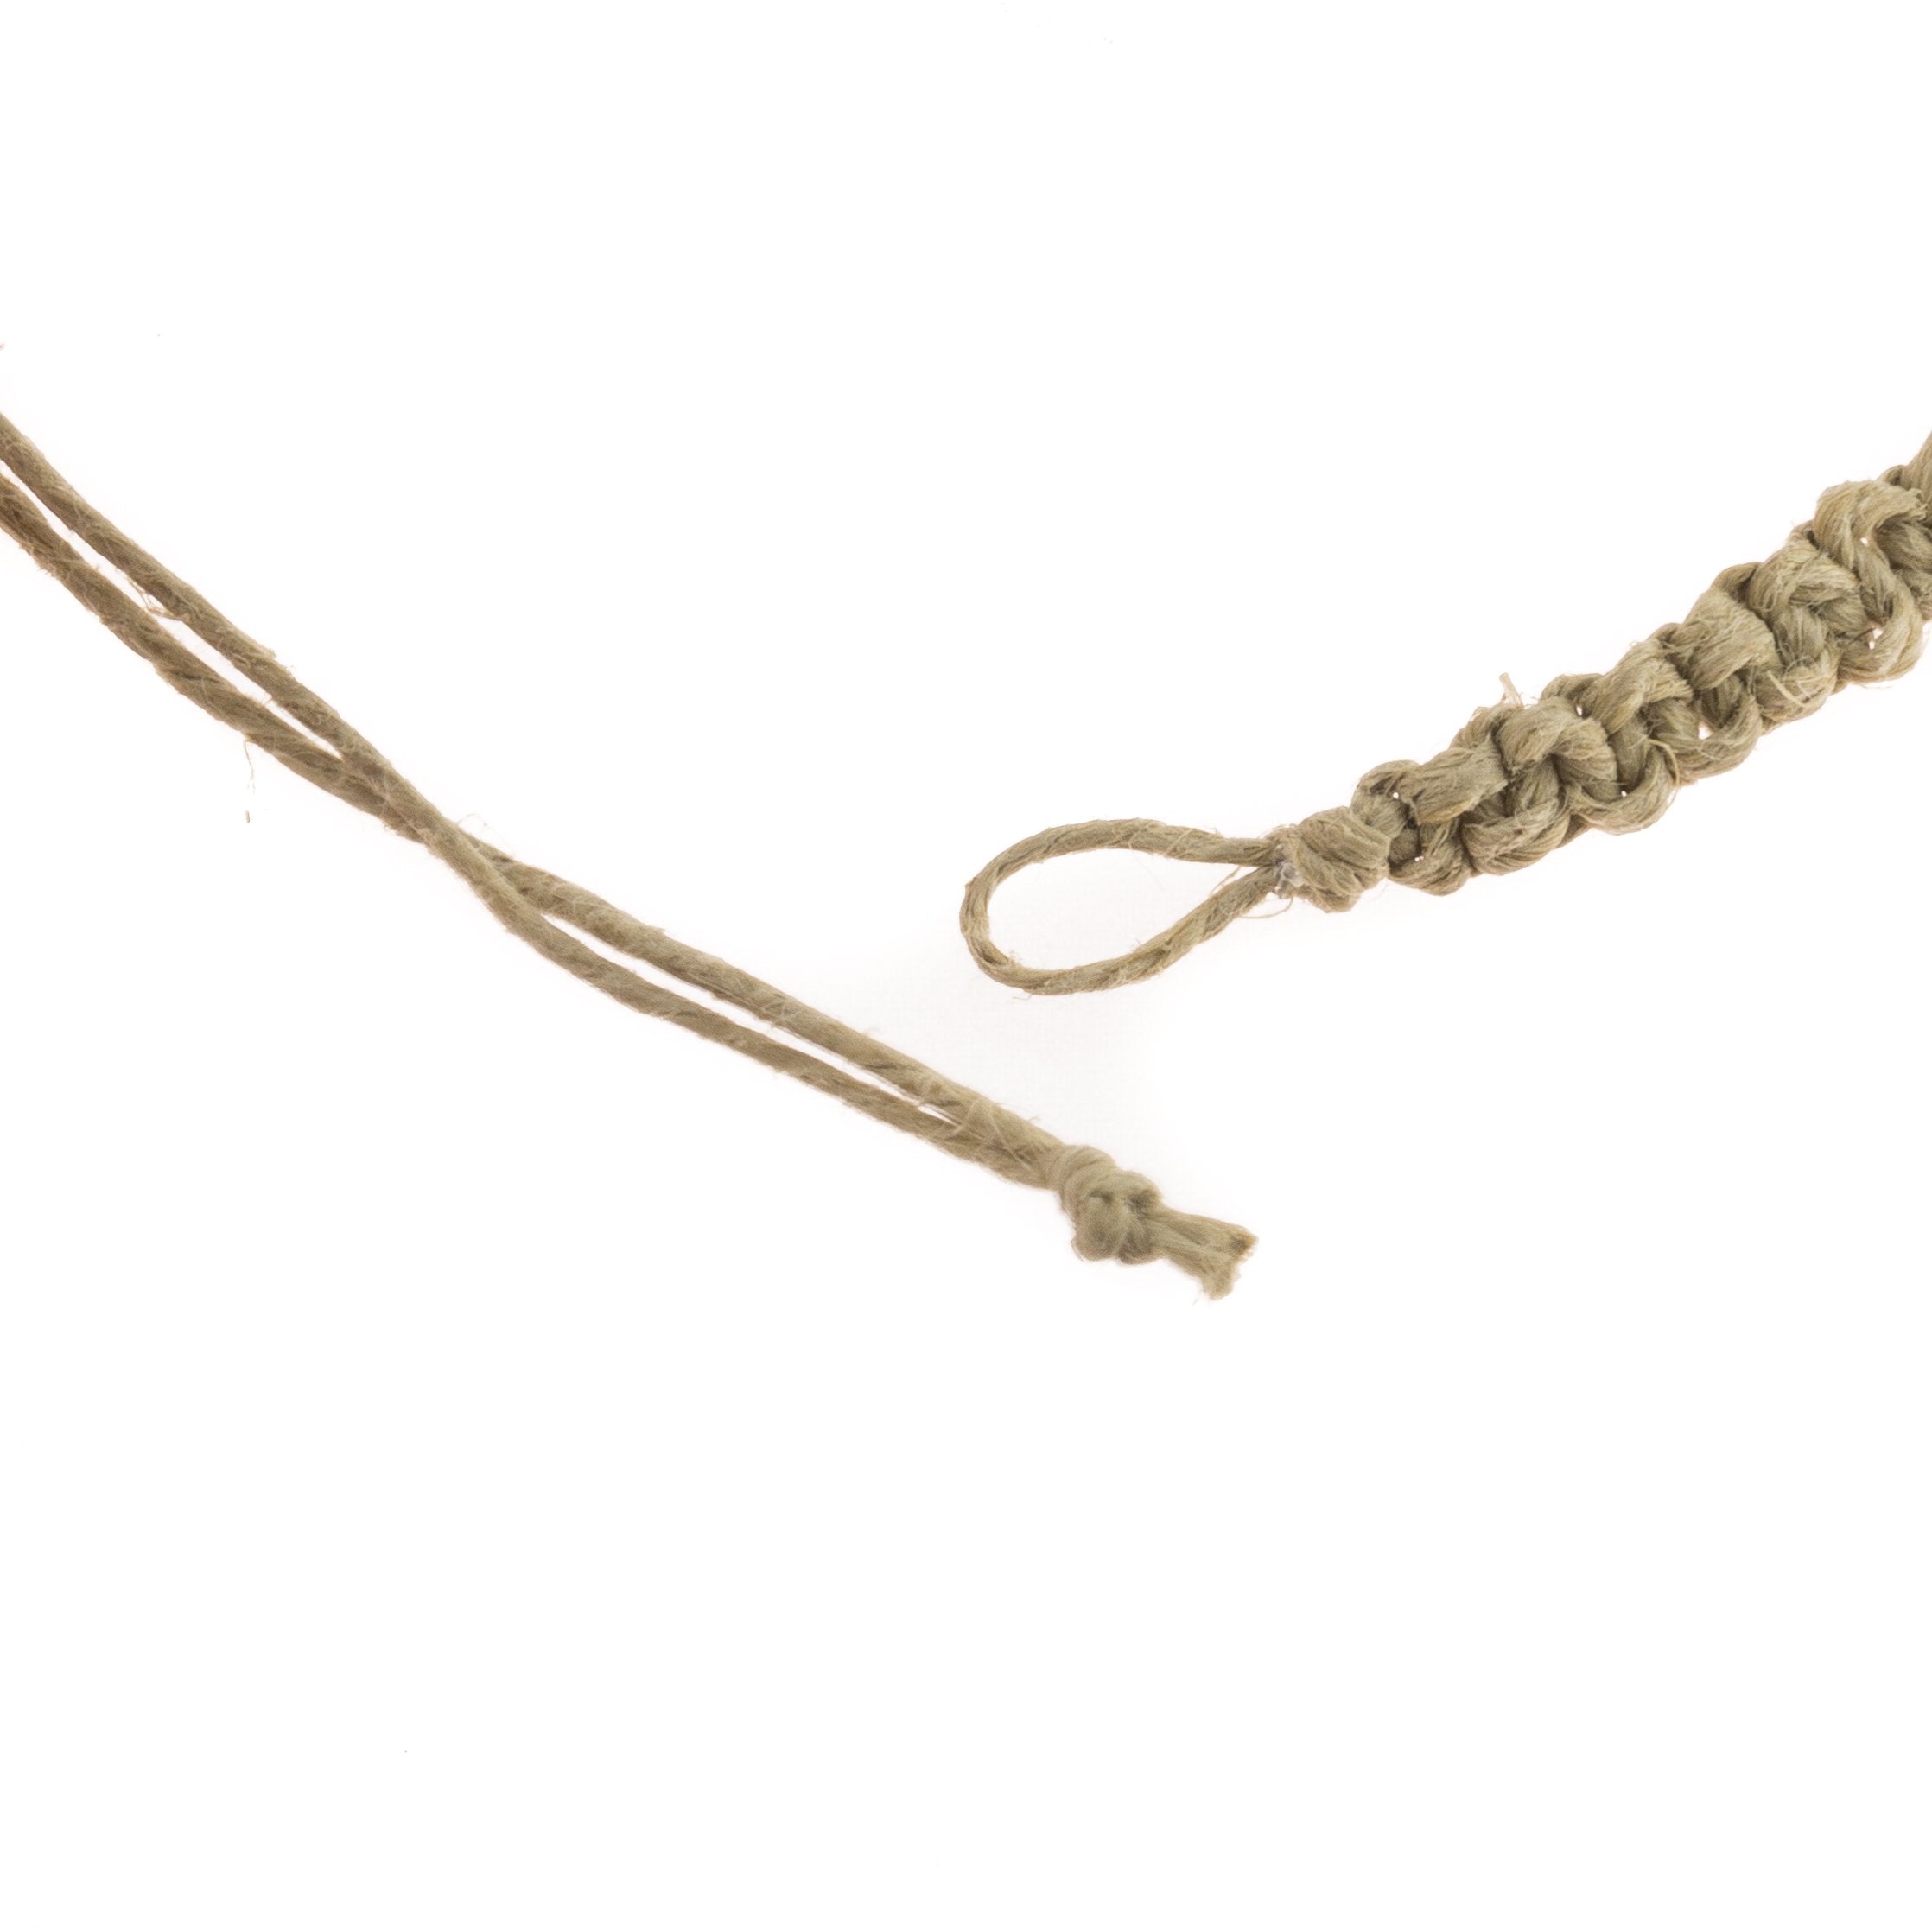 Tiger and Black Coconut Beads on Hemp Anklet Bracelet